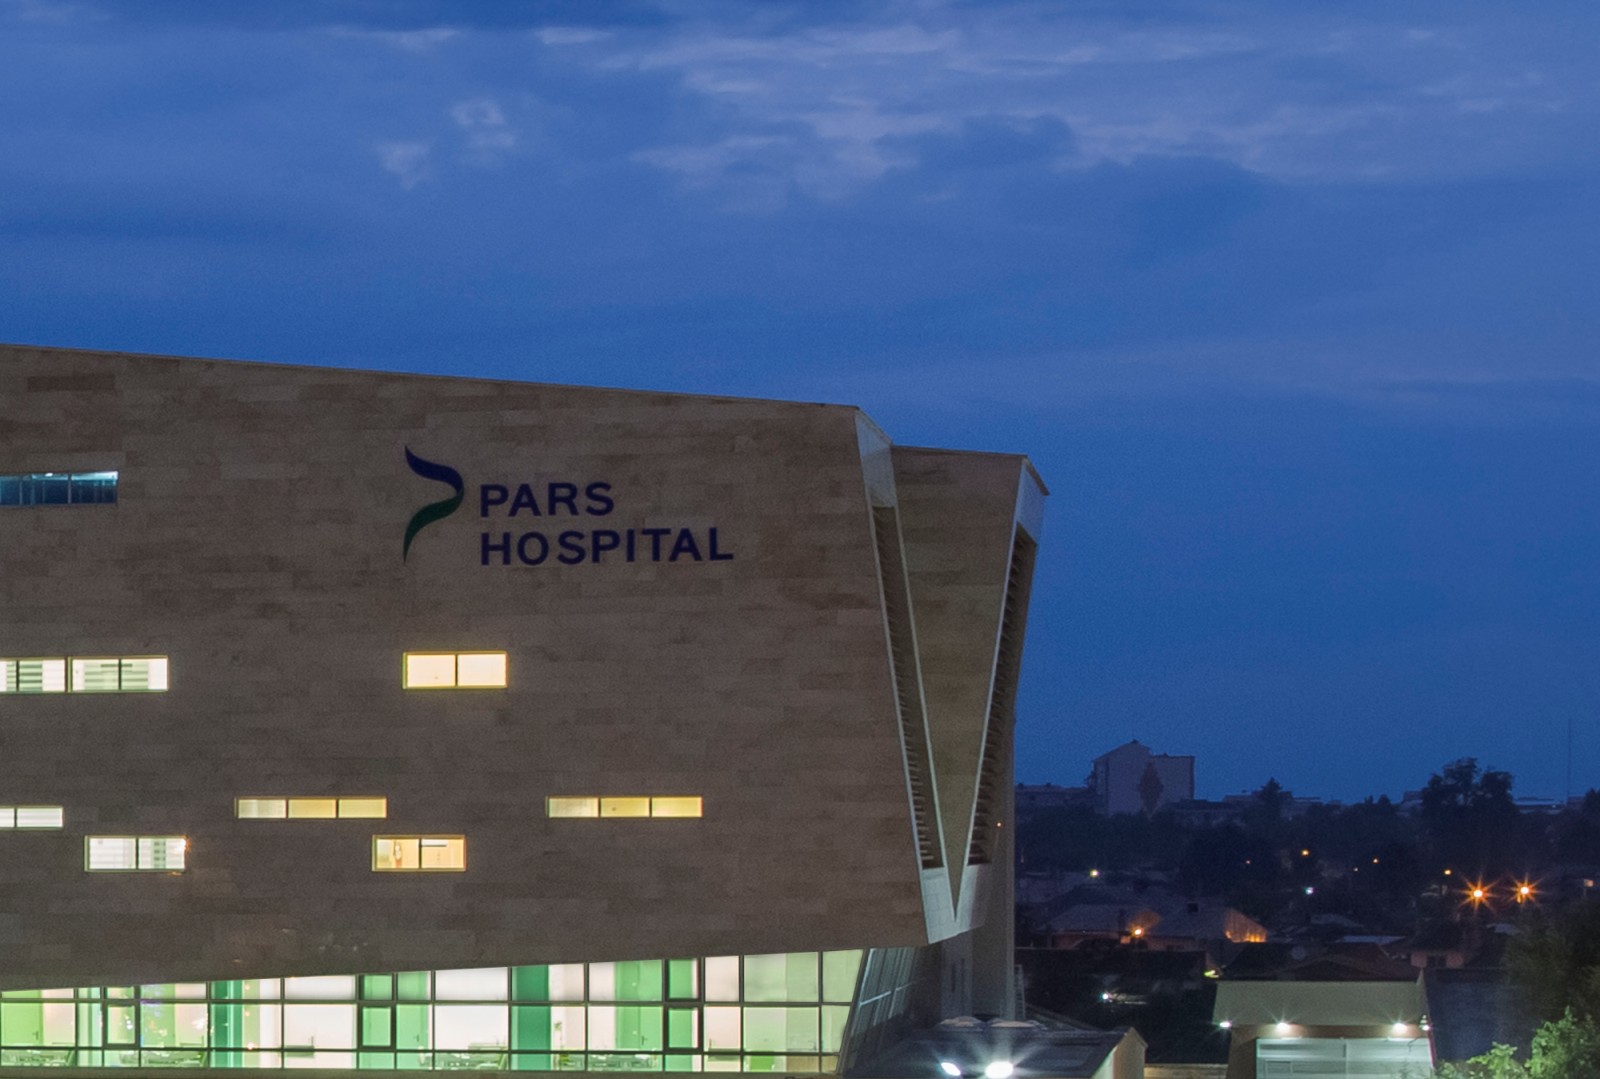 Pars Hospital in Rasht